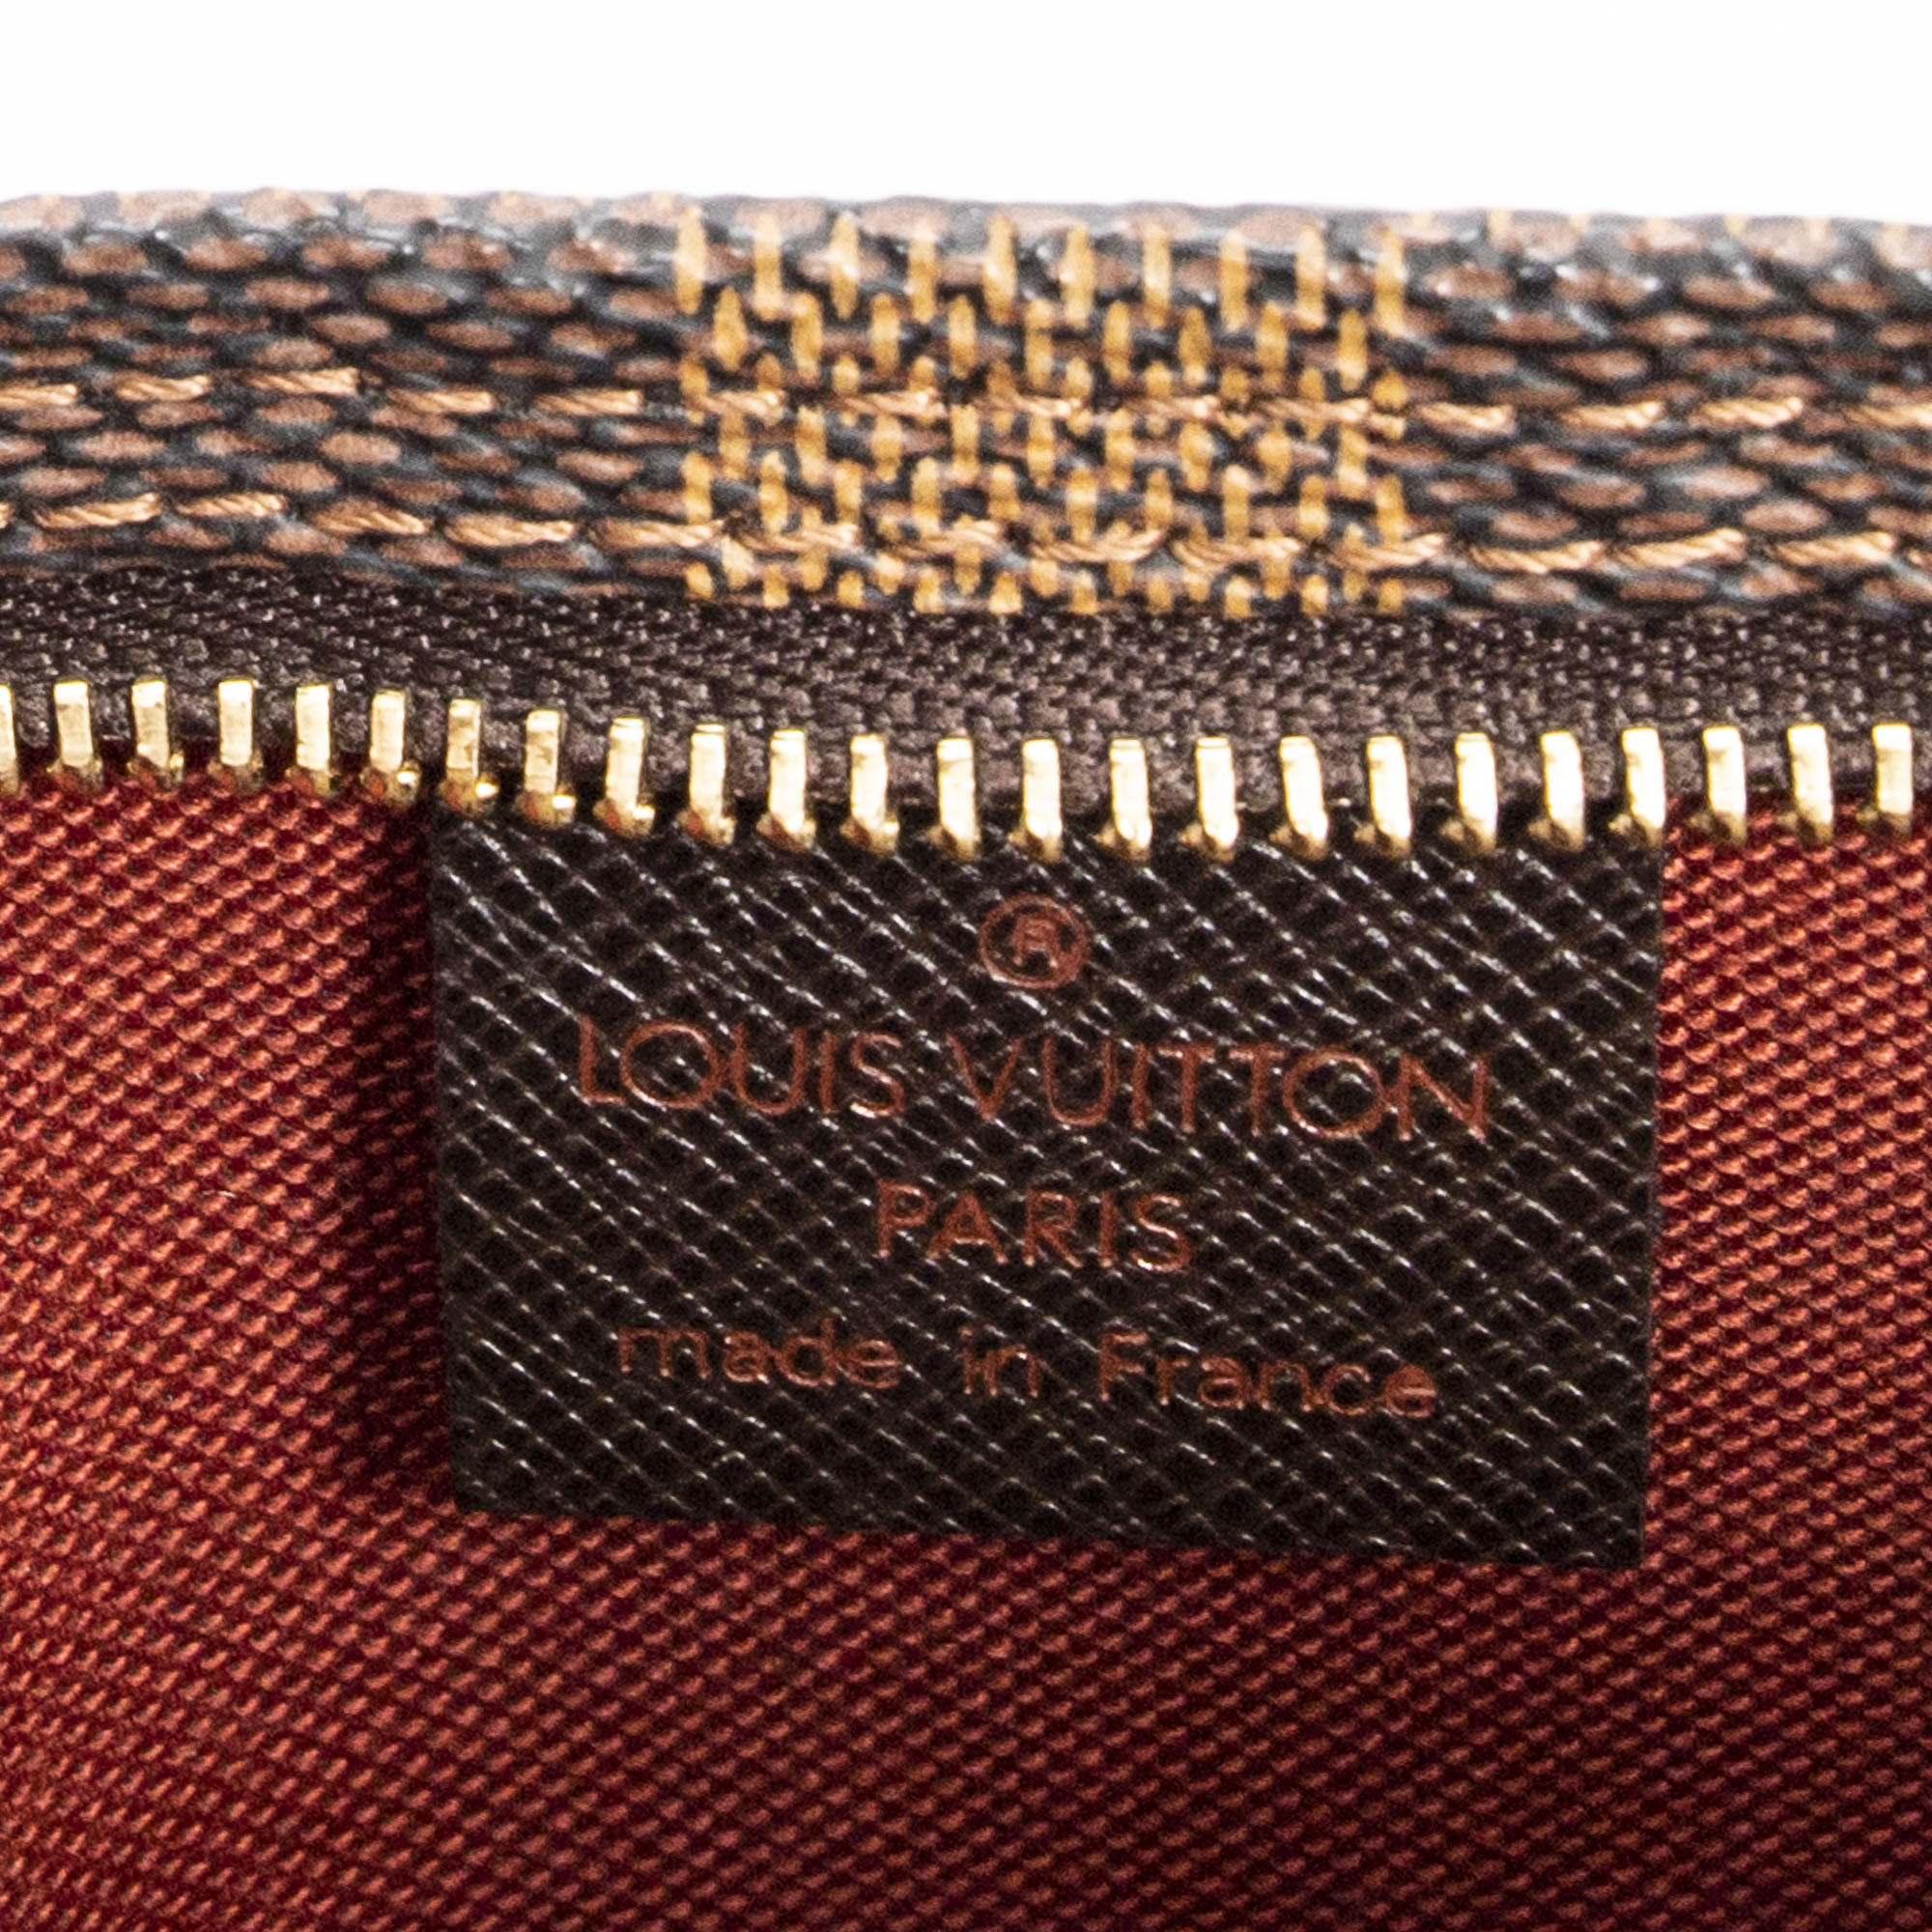 Louis Vuitton Damier Ebene Trousse Make Up Bag (N51982)